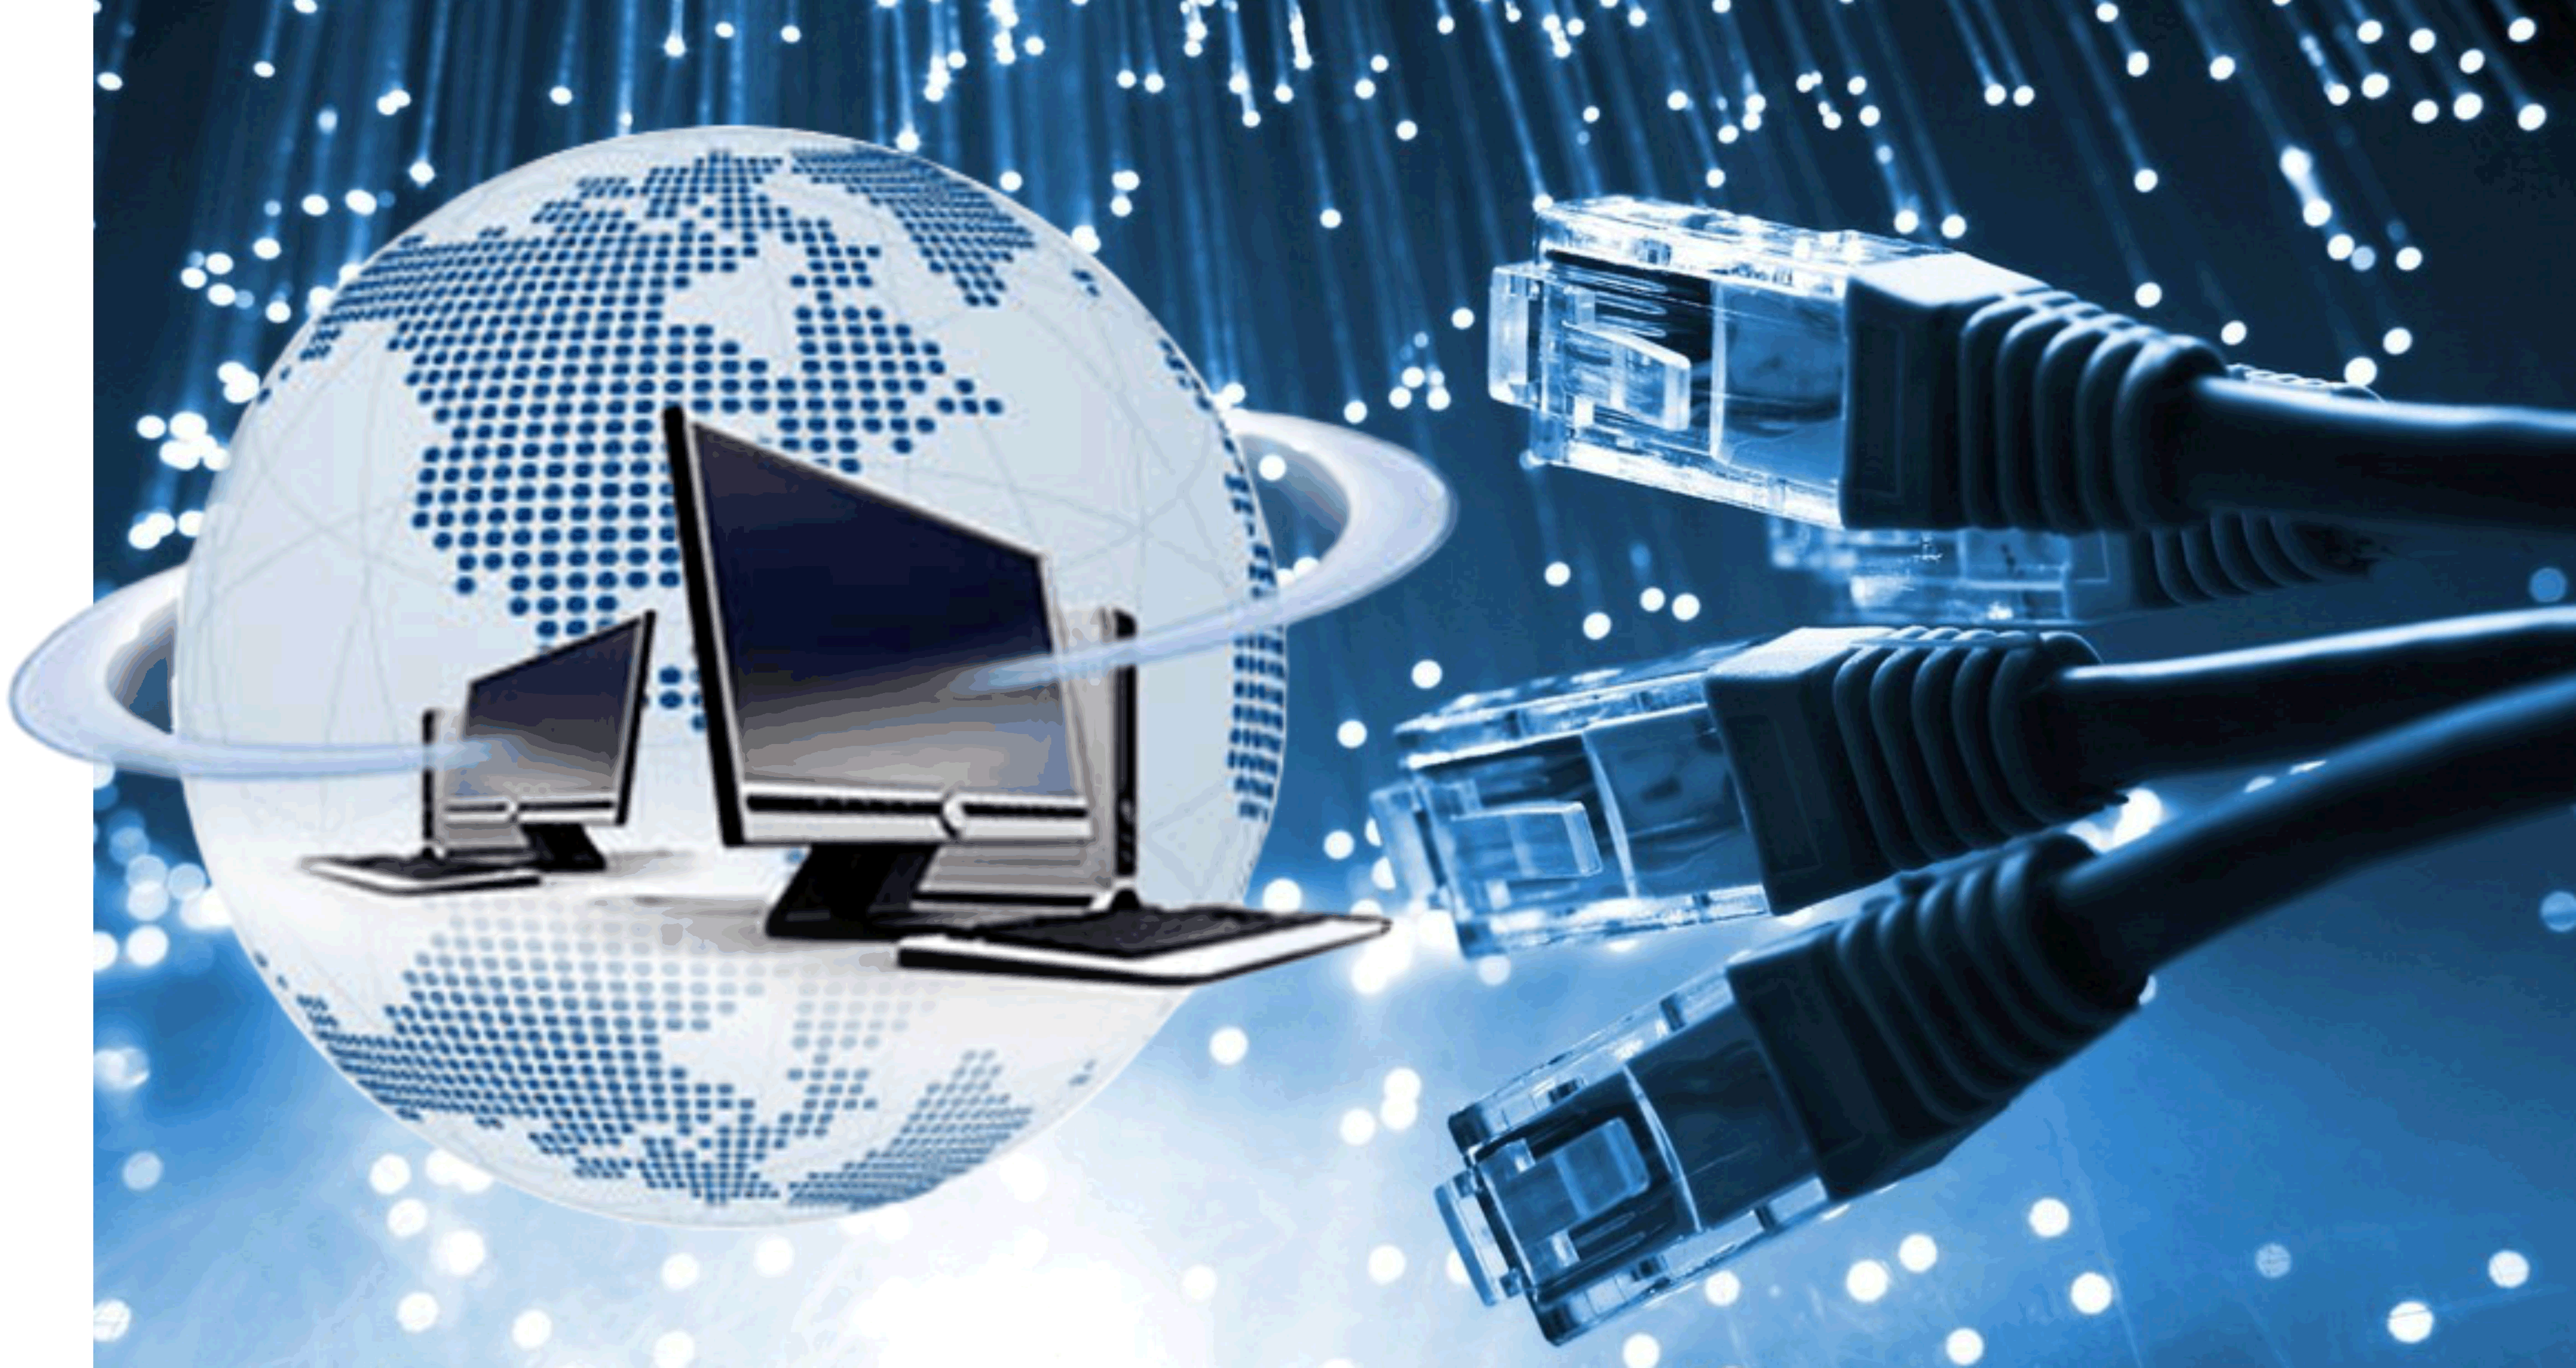 hintergrundbild des computernetzwerks,telekommunikationstechnik,computernetzwerk,elektronik,technologie,design